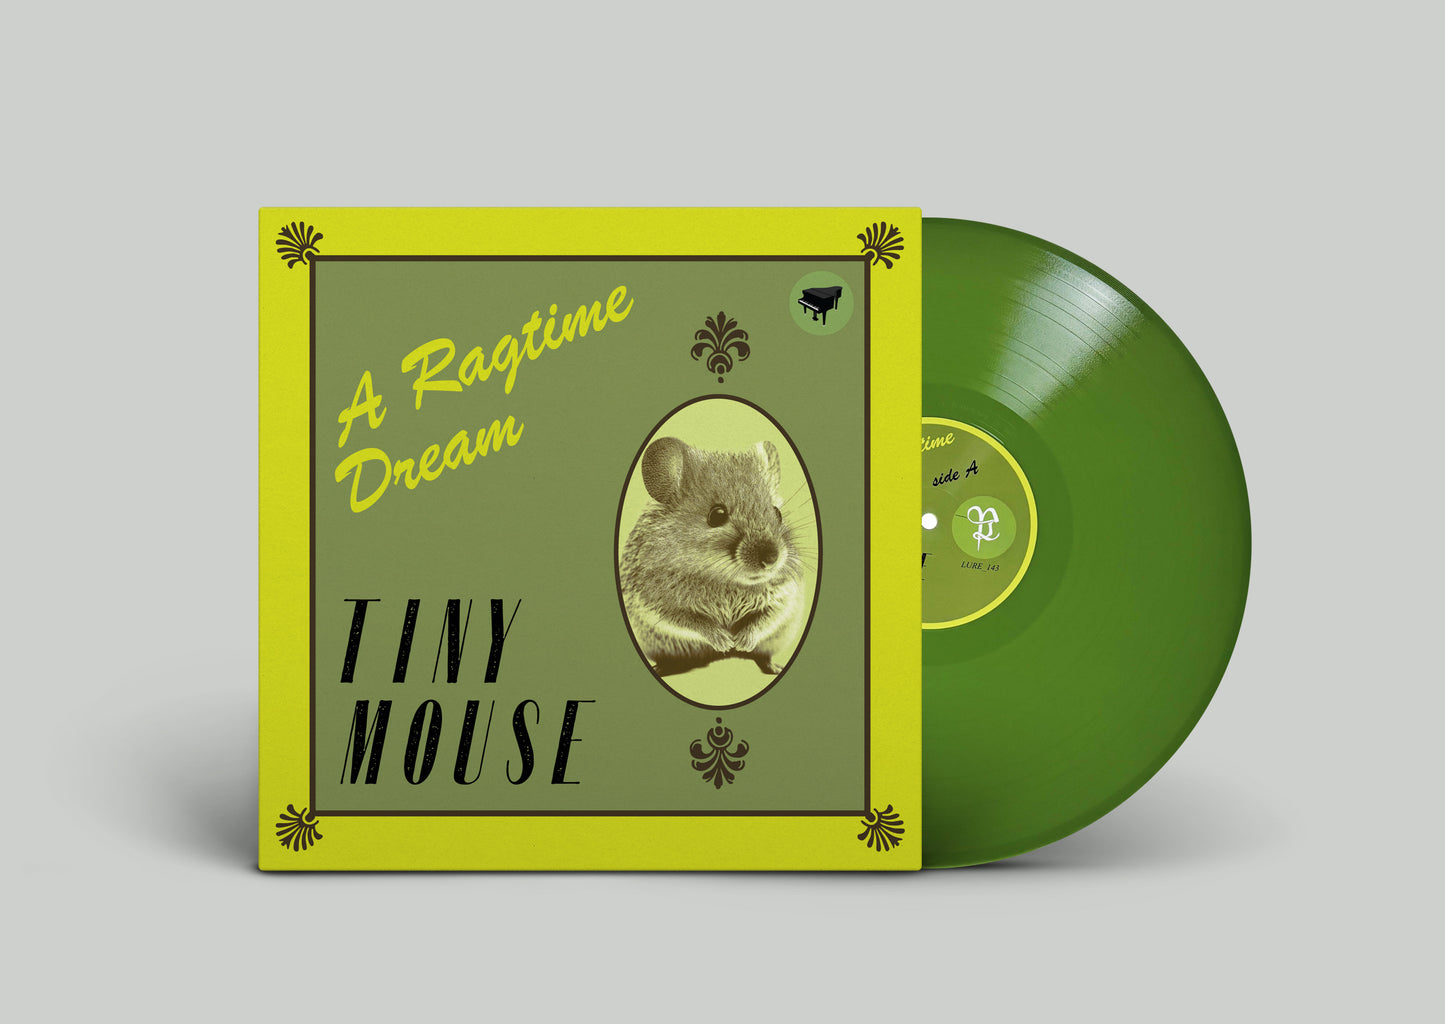 TINY MOUSE "A Ragtime Dream" Vinyl LP (2 color options)